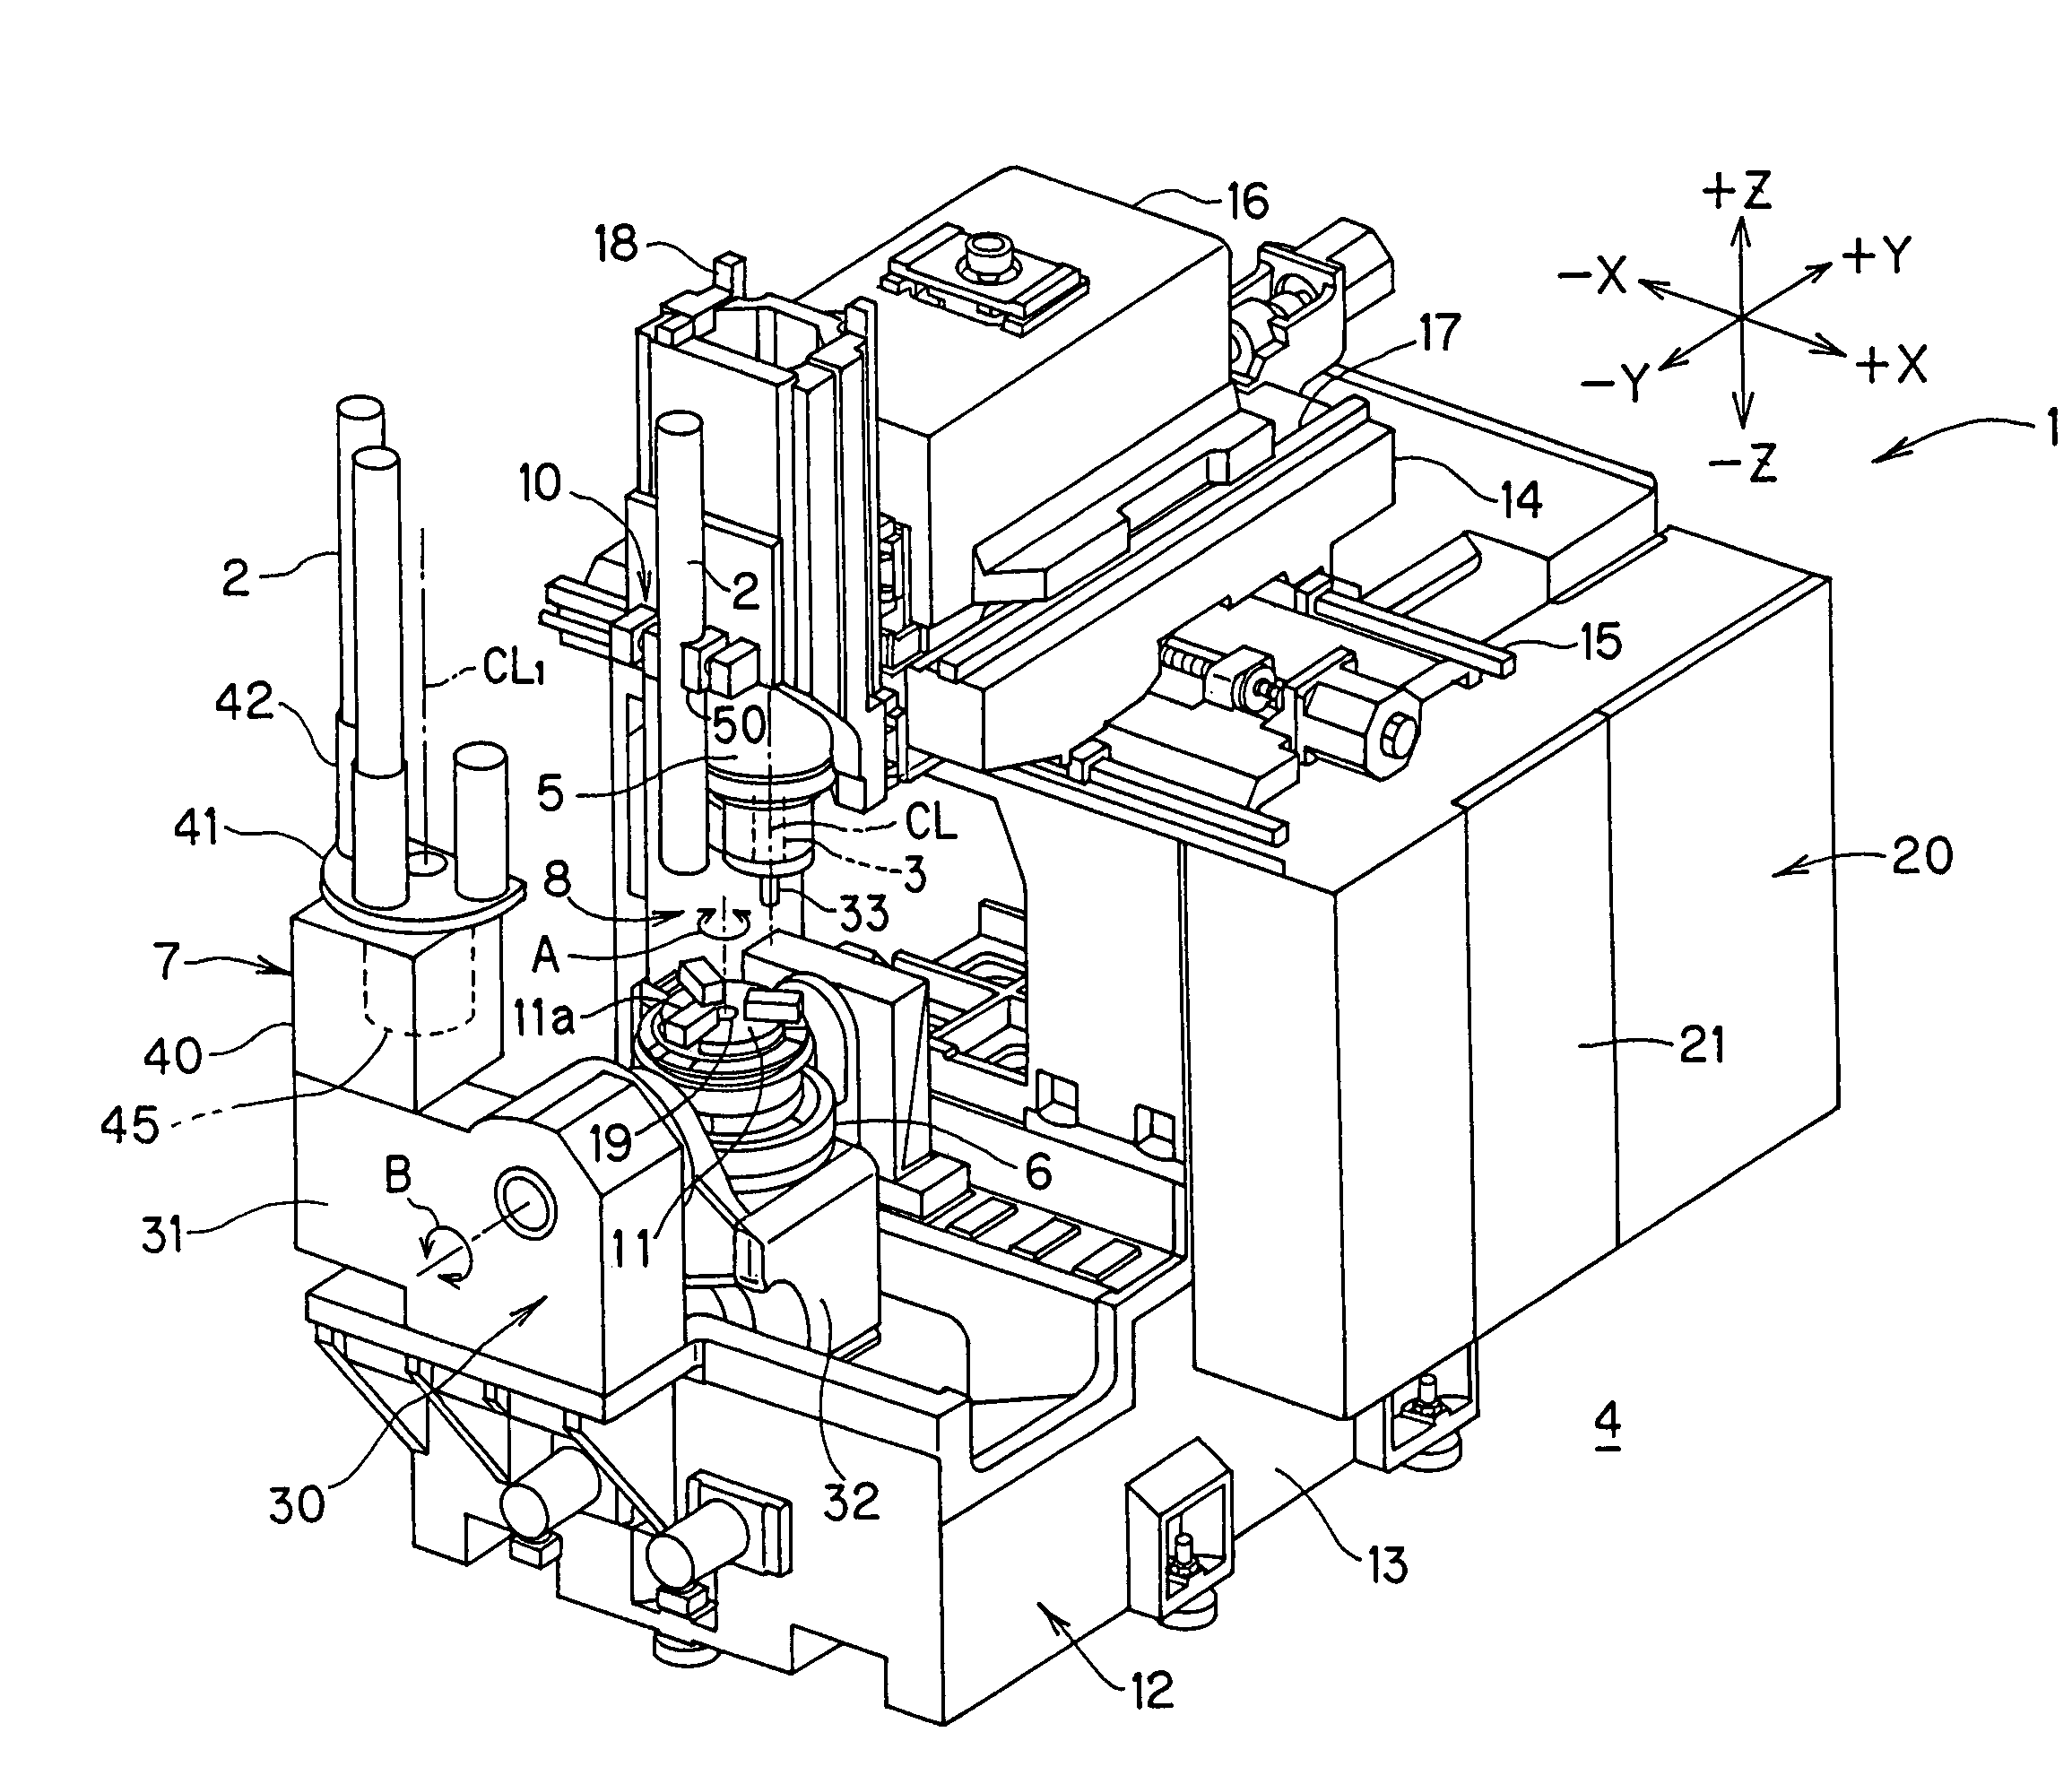 Vertical machining center